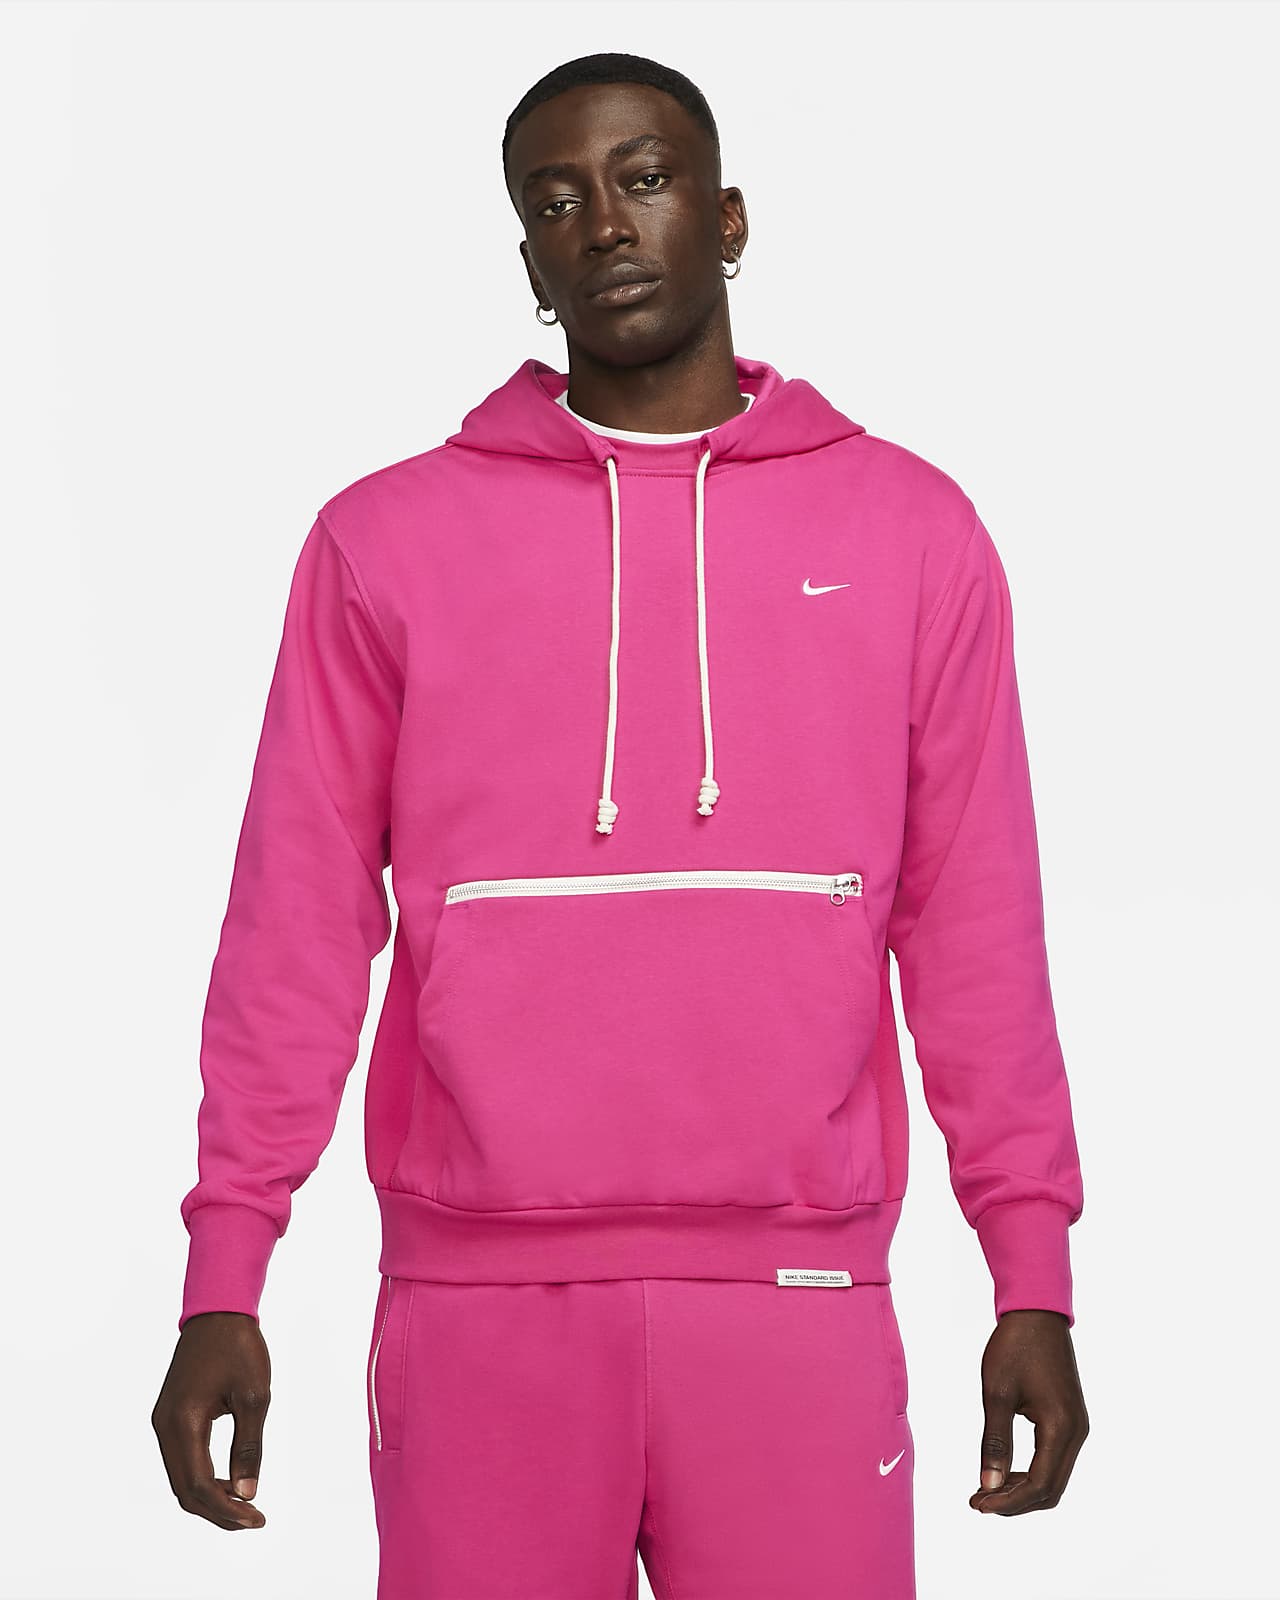 Basketball Sweatshirt. Nike ID